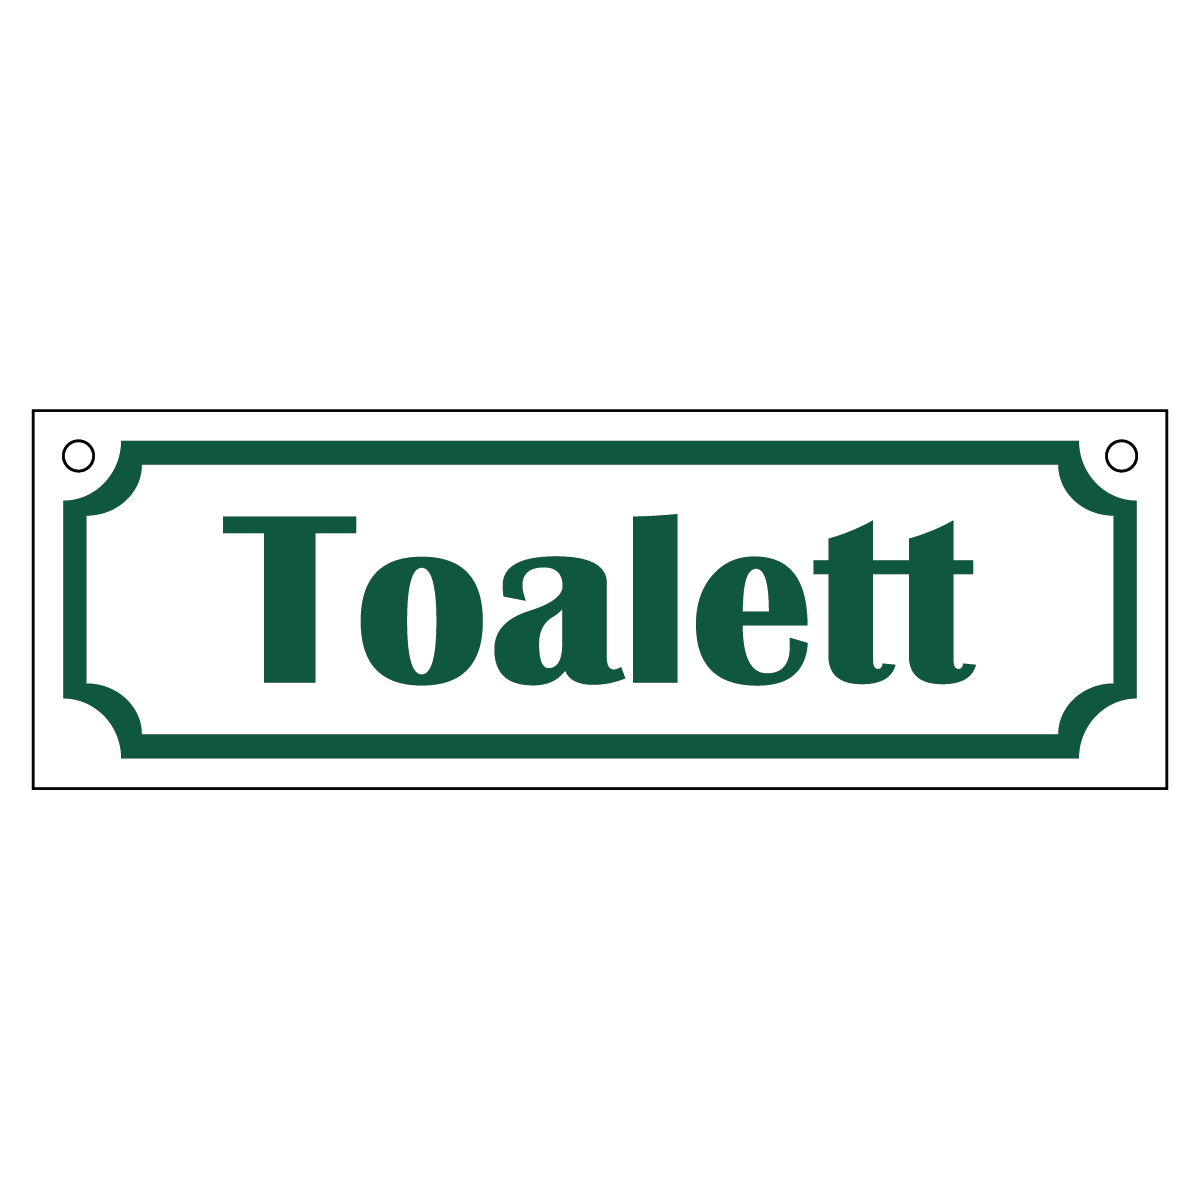 Toalett - Skylt - 150x50mm - Vit - Grön